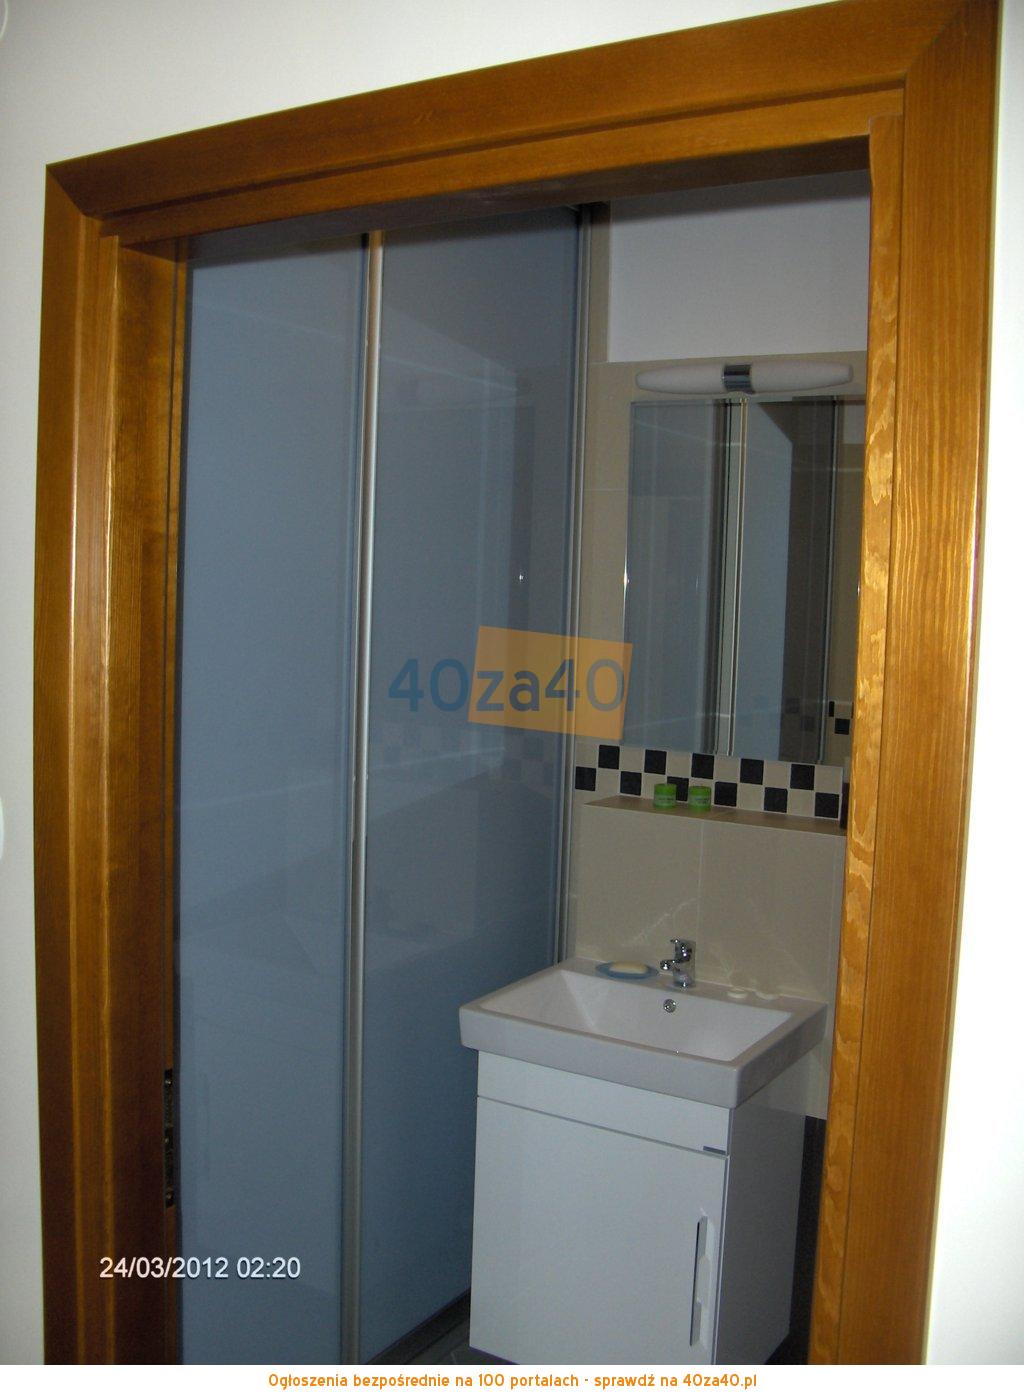 Mieszkanie do wynajęcia, pokoje: 3, cena: 3 700,00 PLN, Warszawa, kontakt: 0048513153579